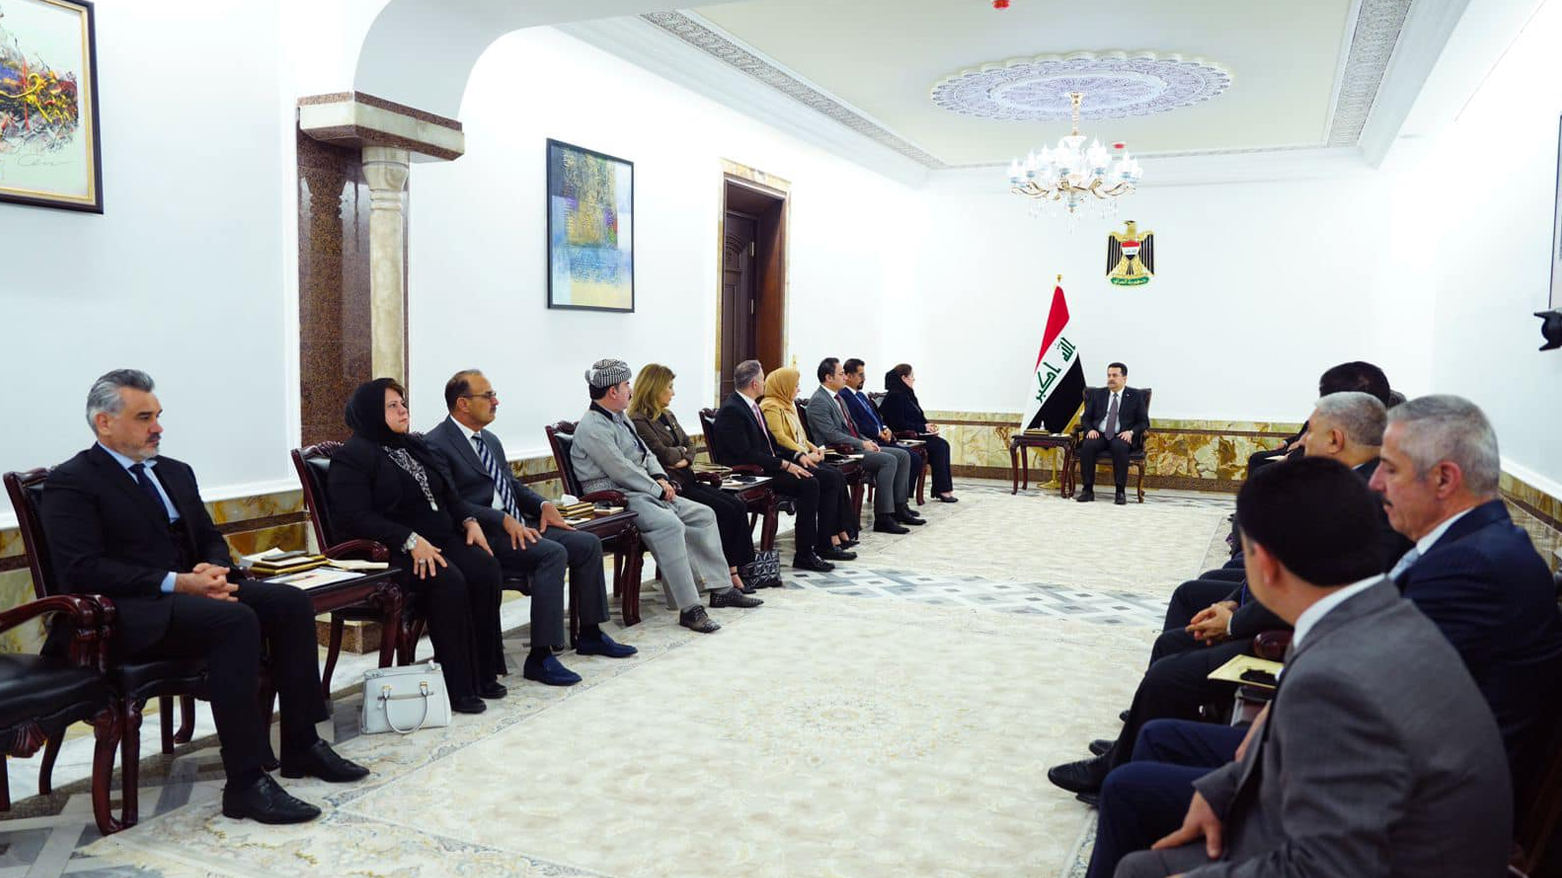 السوداني يستقبل أعضاء كتلة الحزب الديمقراطي الكوردستاني في مجلس النواب العراقي